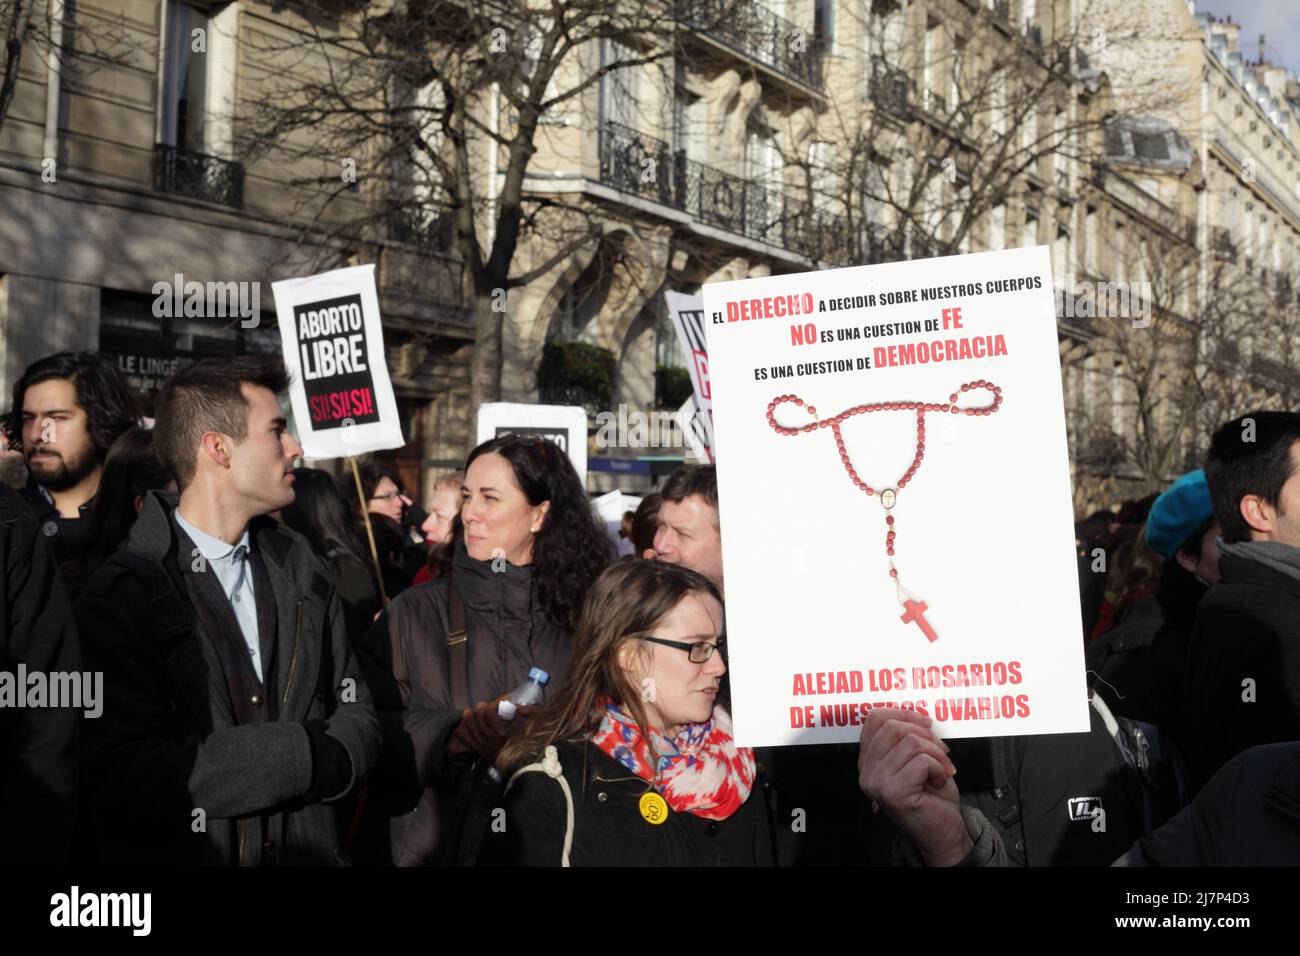 Paris : Manifestation contre le projet de loi anti-avortement en Espagne 01er février 2014. Panneaux Aborto libre et Alejad Los Rosarios Stock Photo